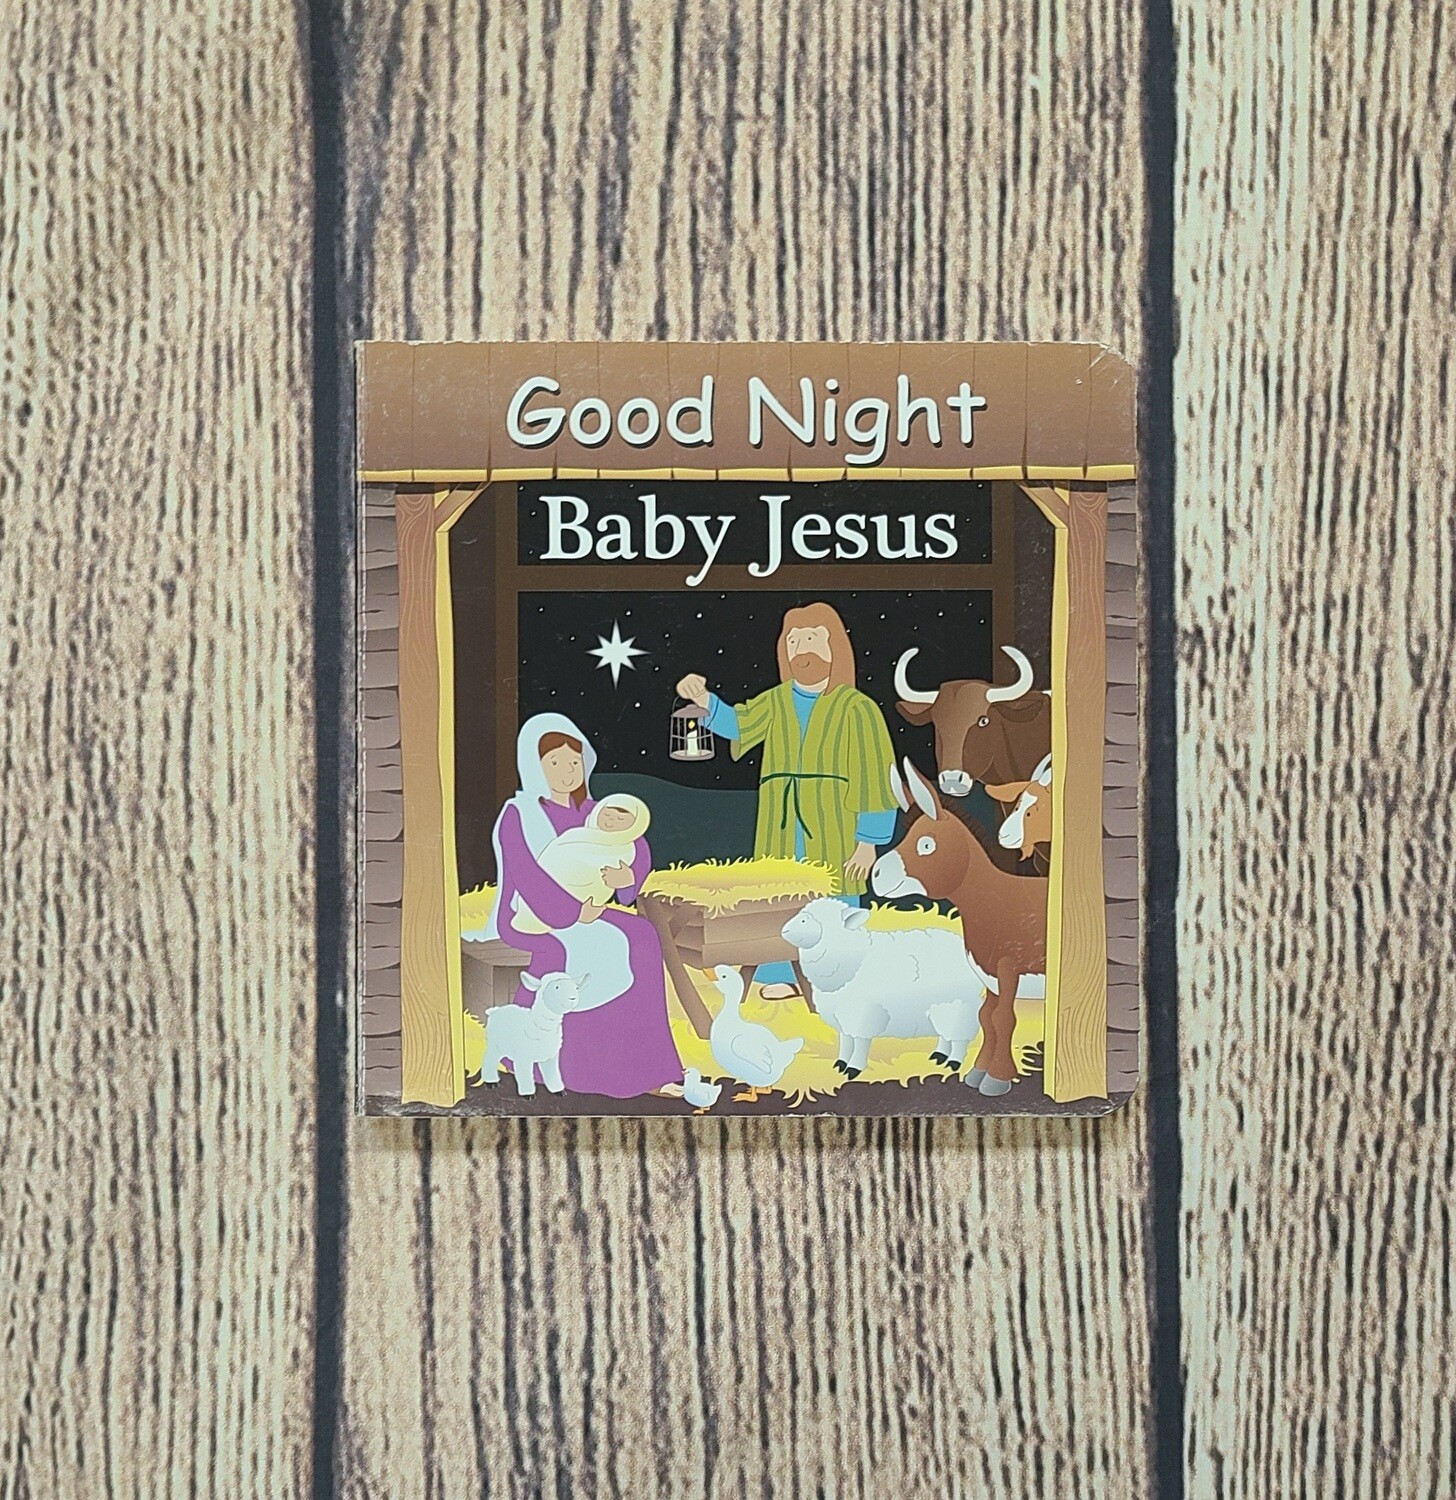 Good Night Baby Jesus by Adam Gamble and Joe Veno